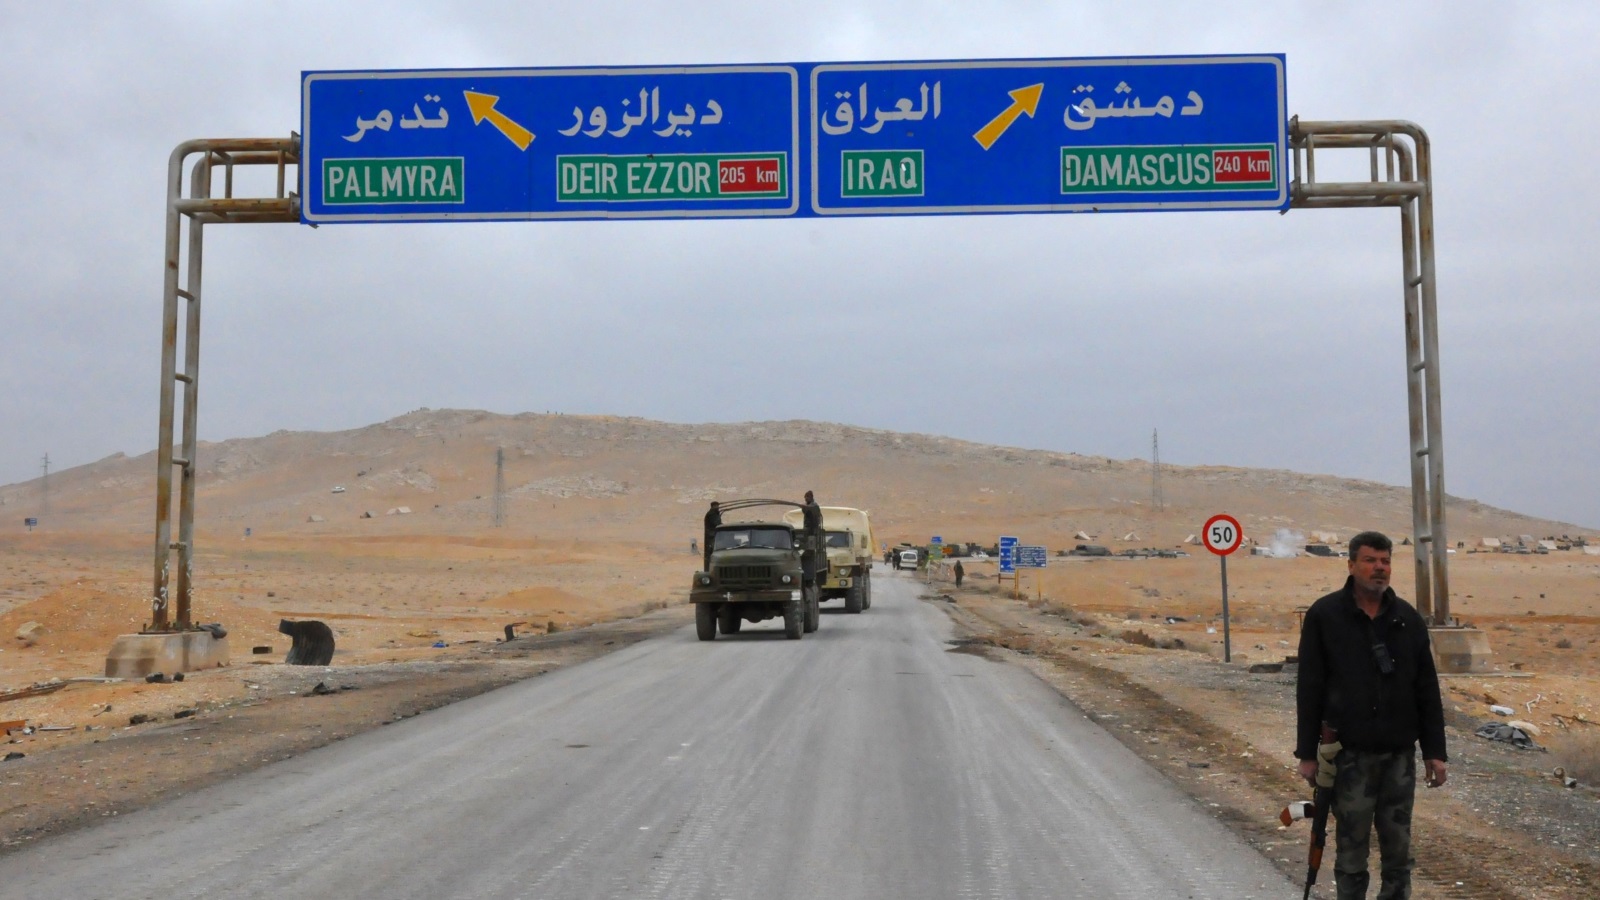 ‪(رويترز)‬ الجيش السوري وحلفاؤه وصلوا دير الزور في سبتمبر/أيلول الماضي